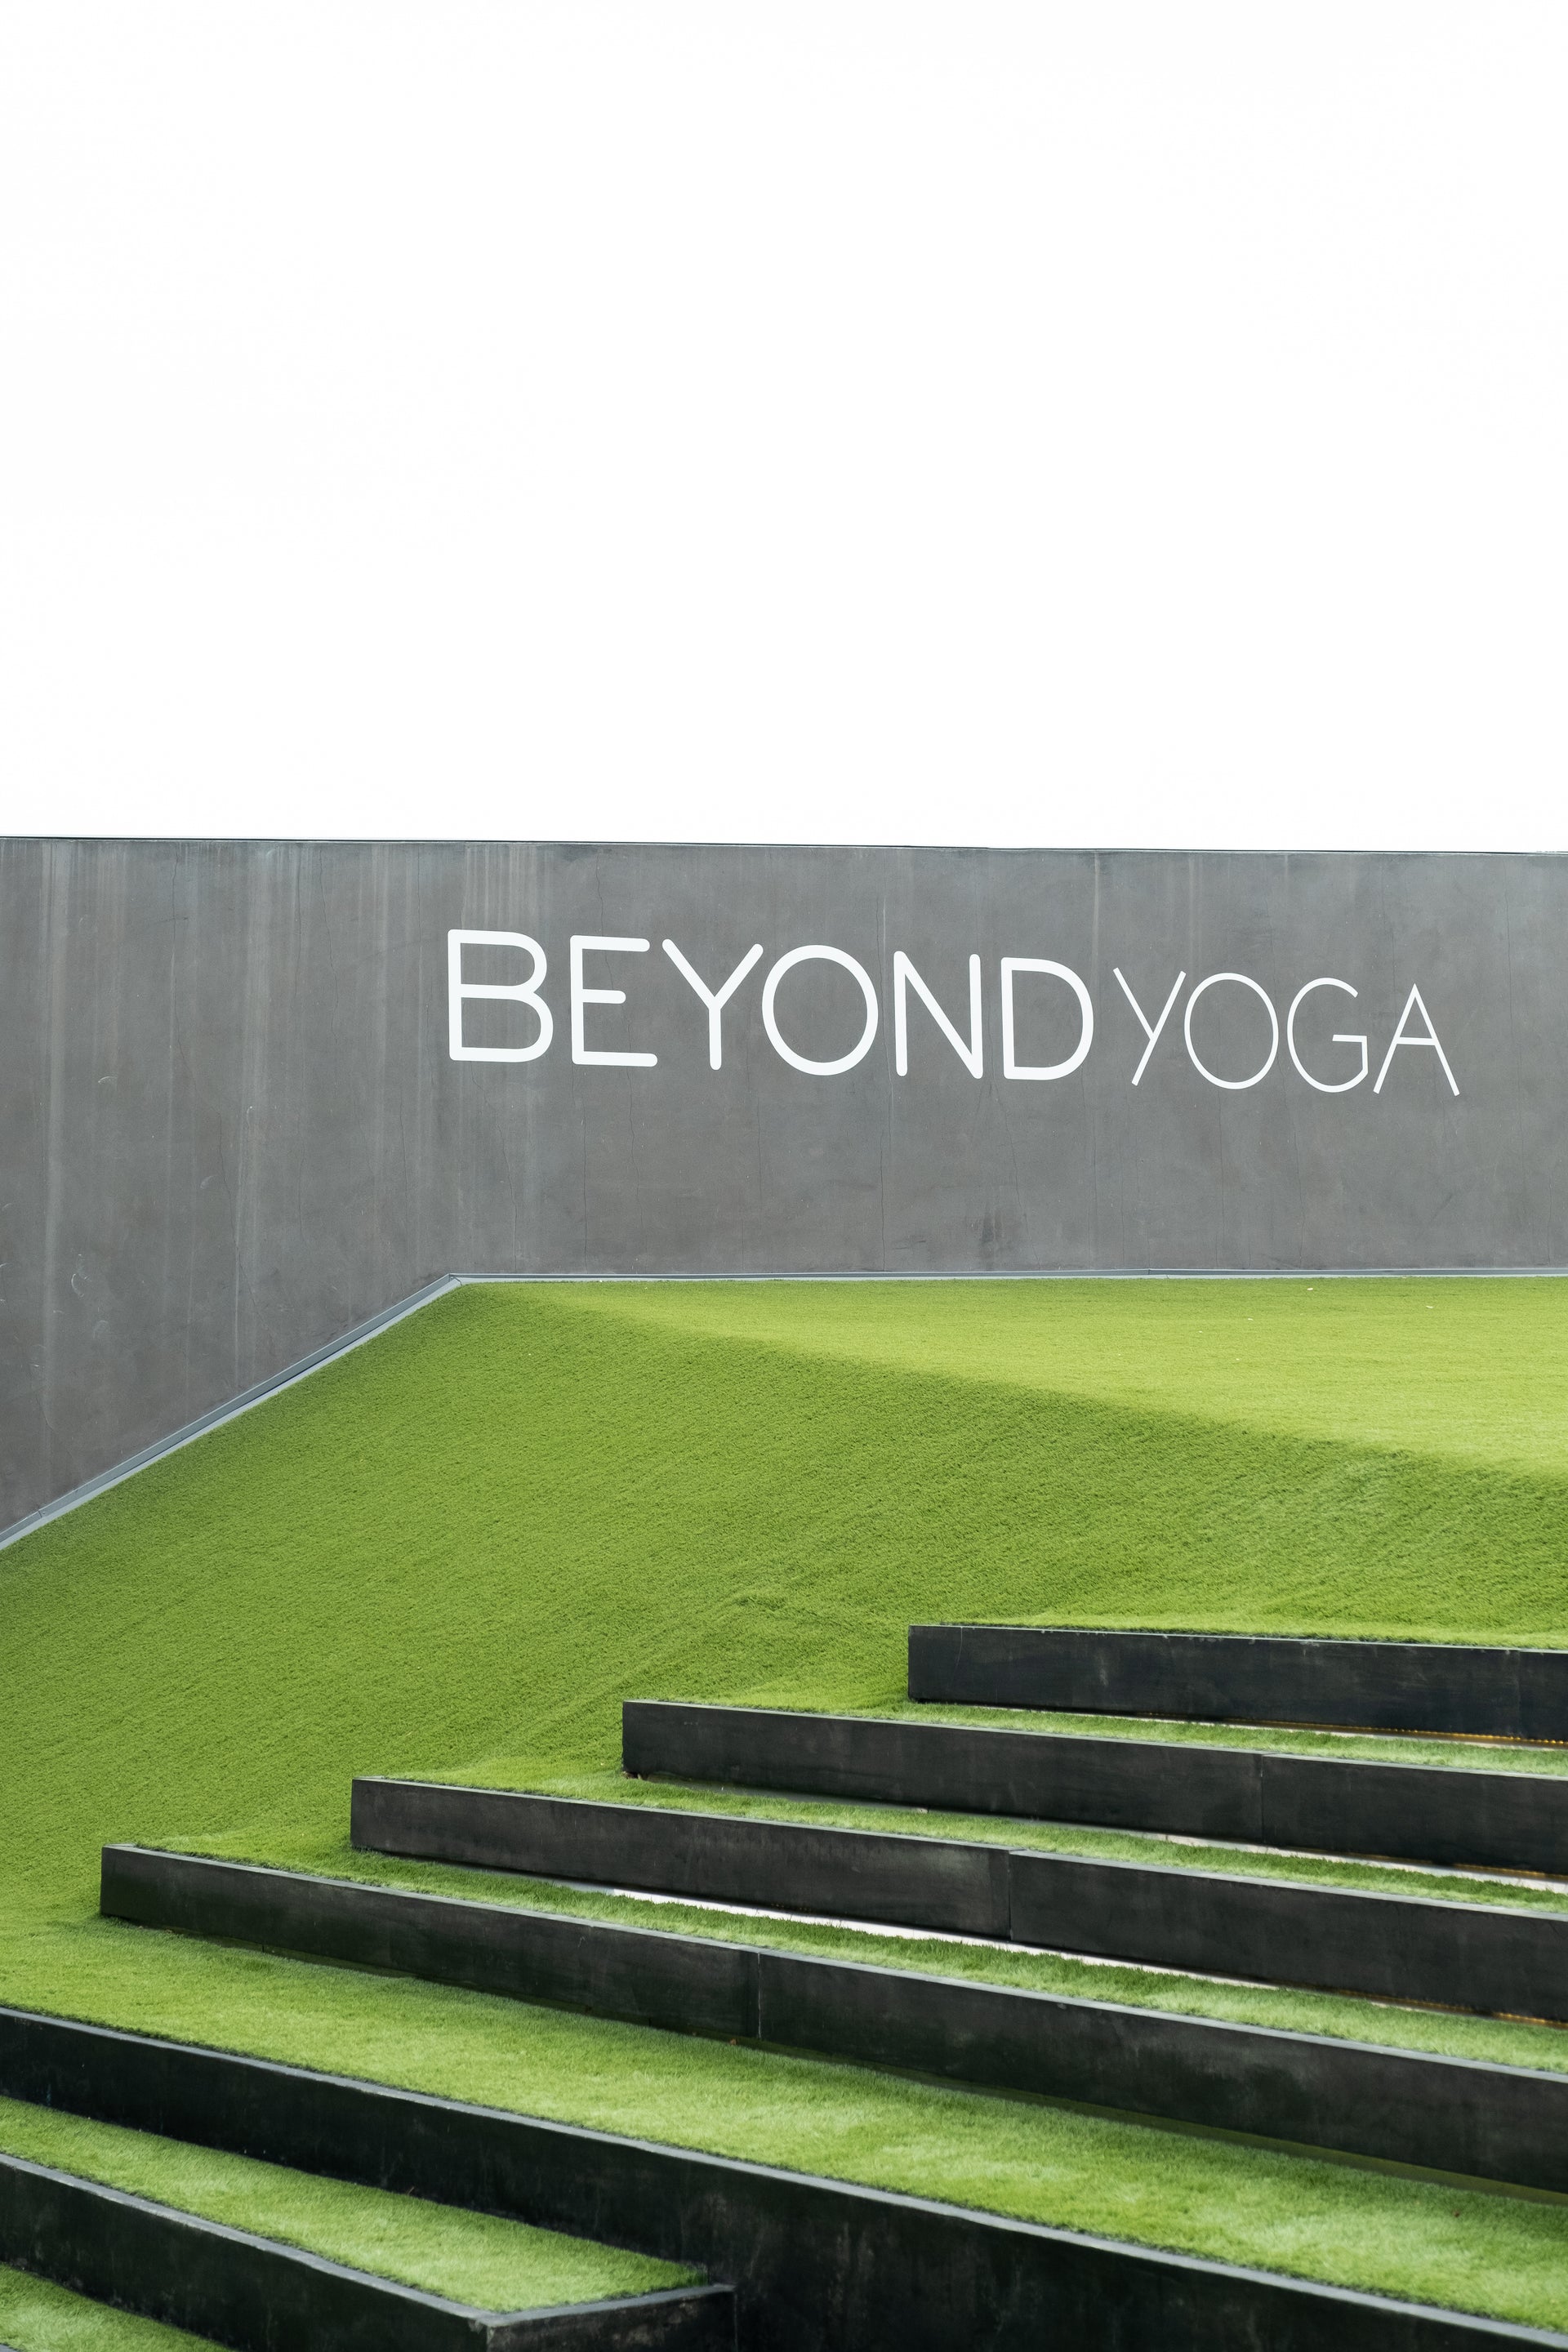 Beyond Yoga sign